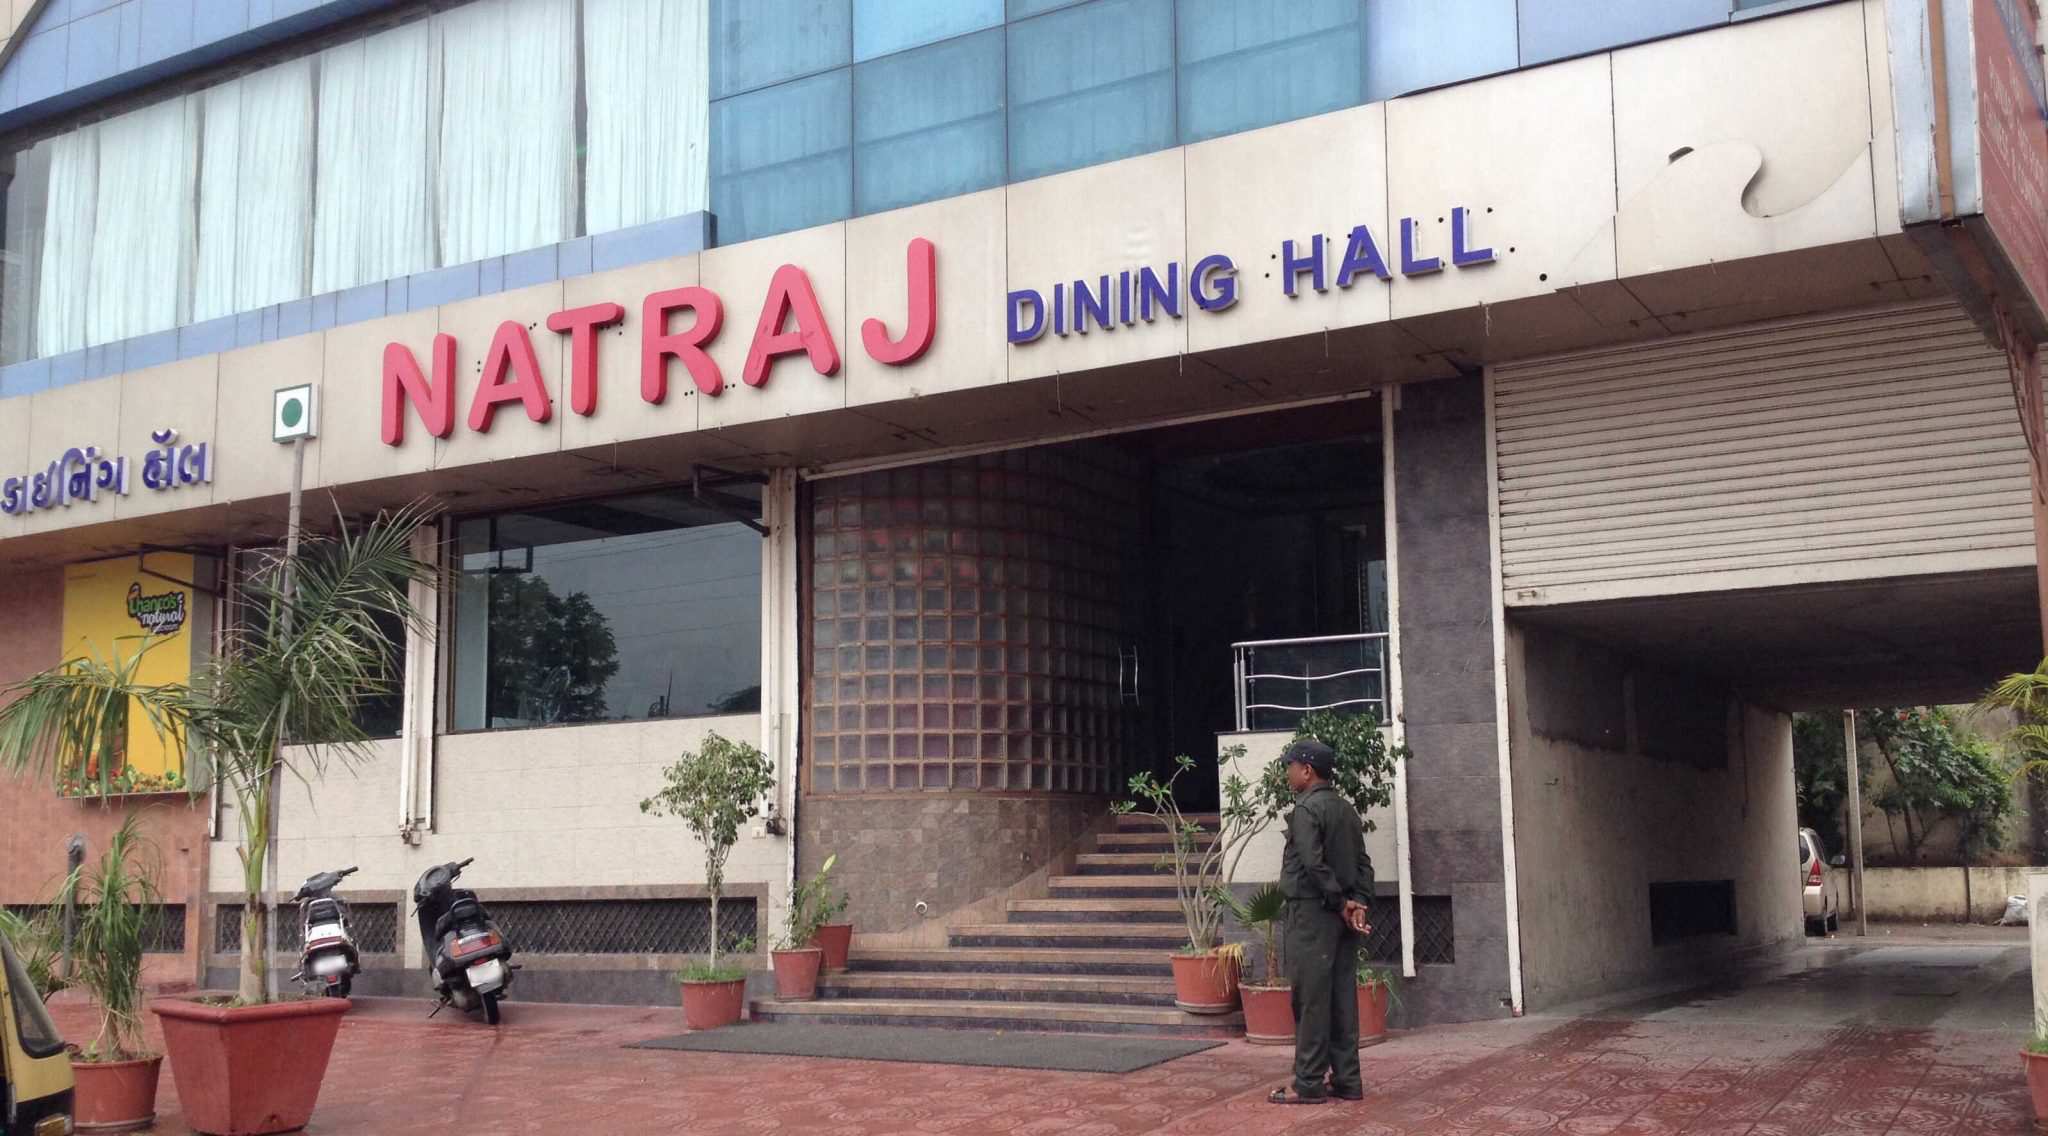 Natraj Dining Hall & Restaurant